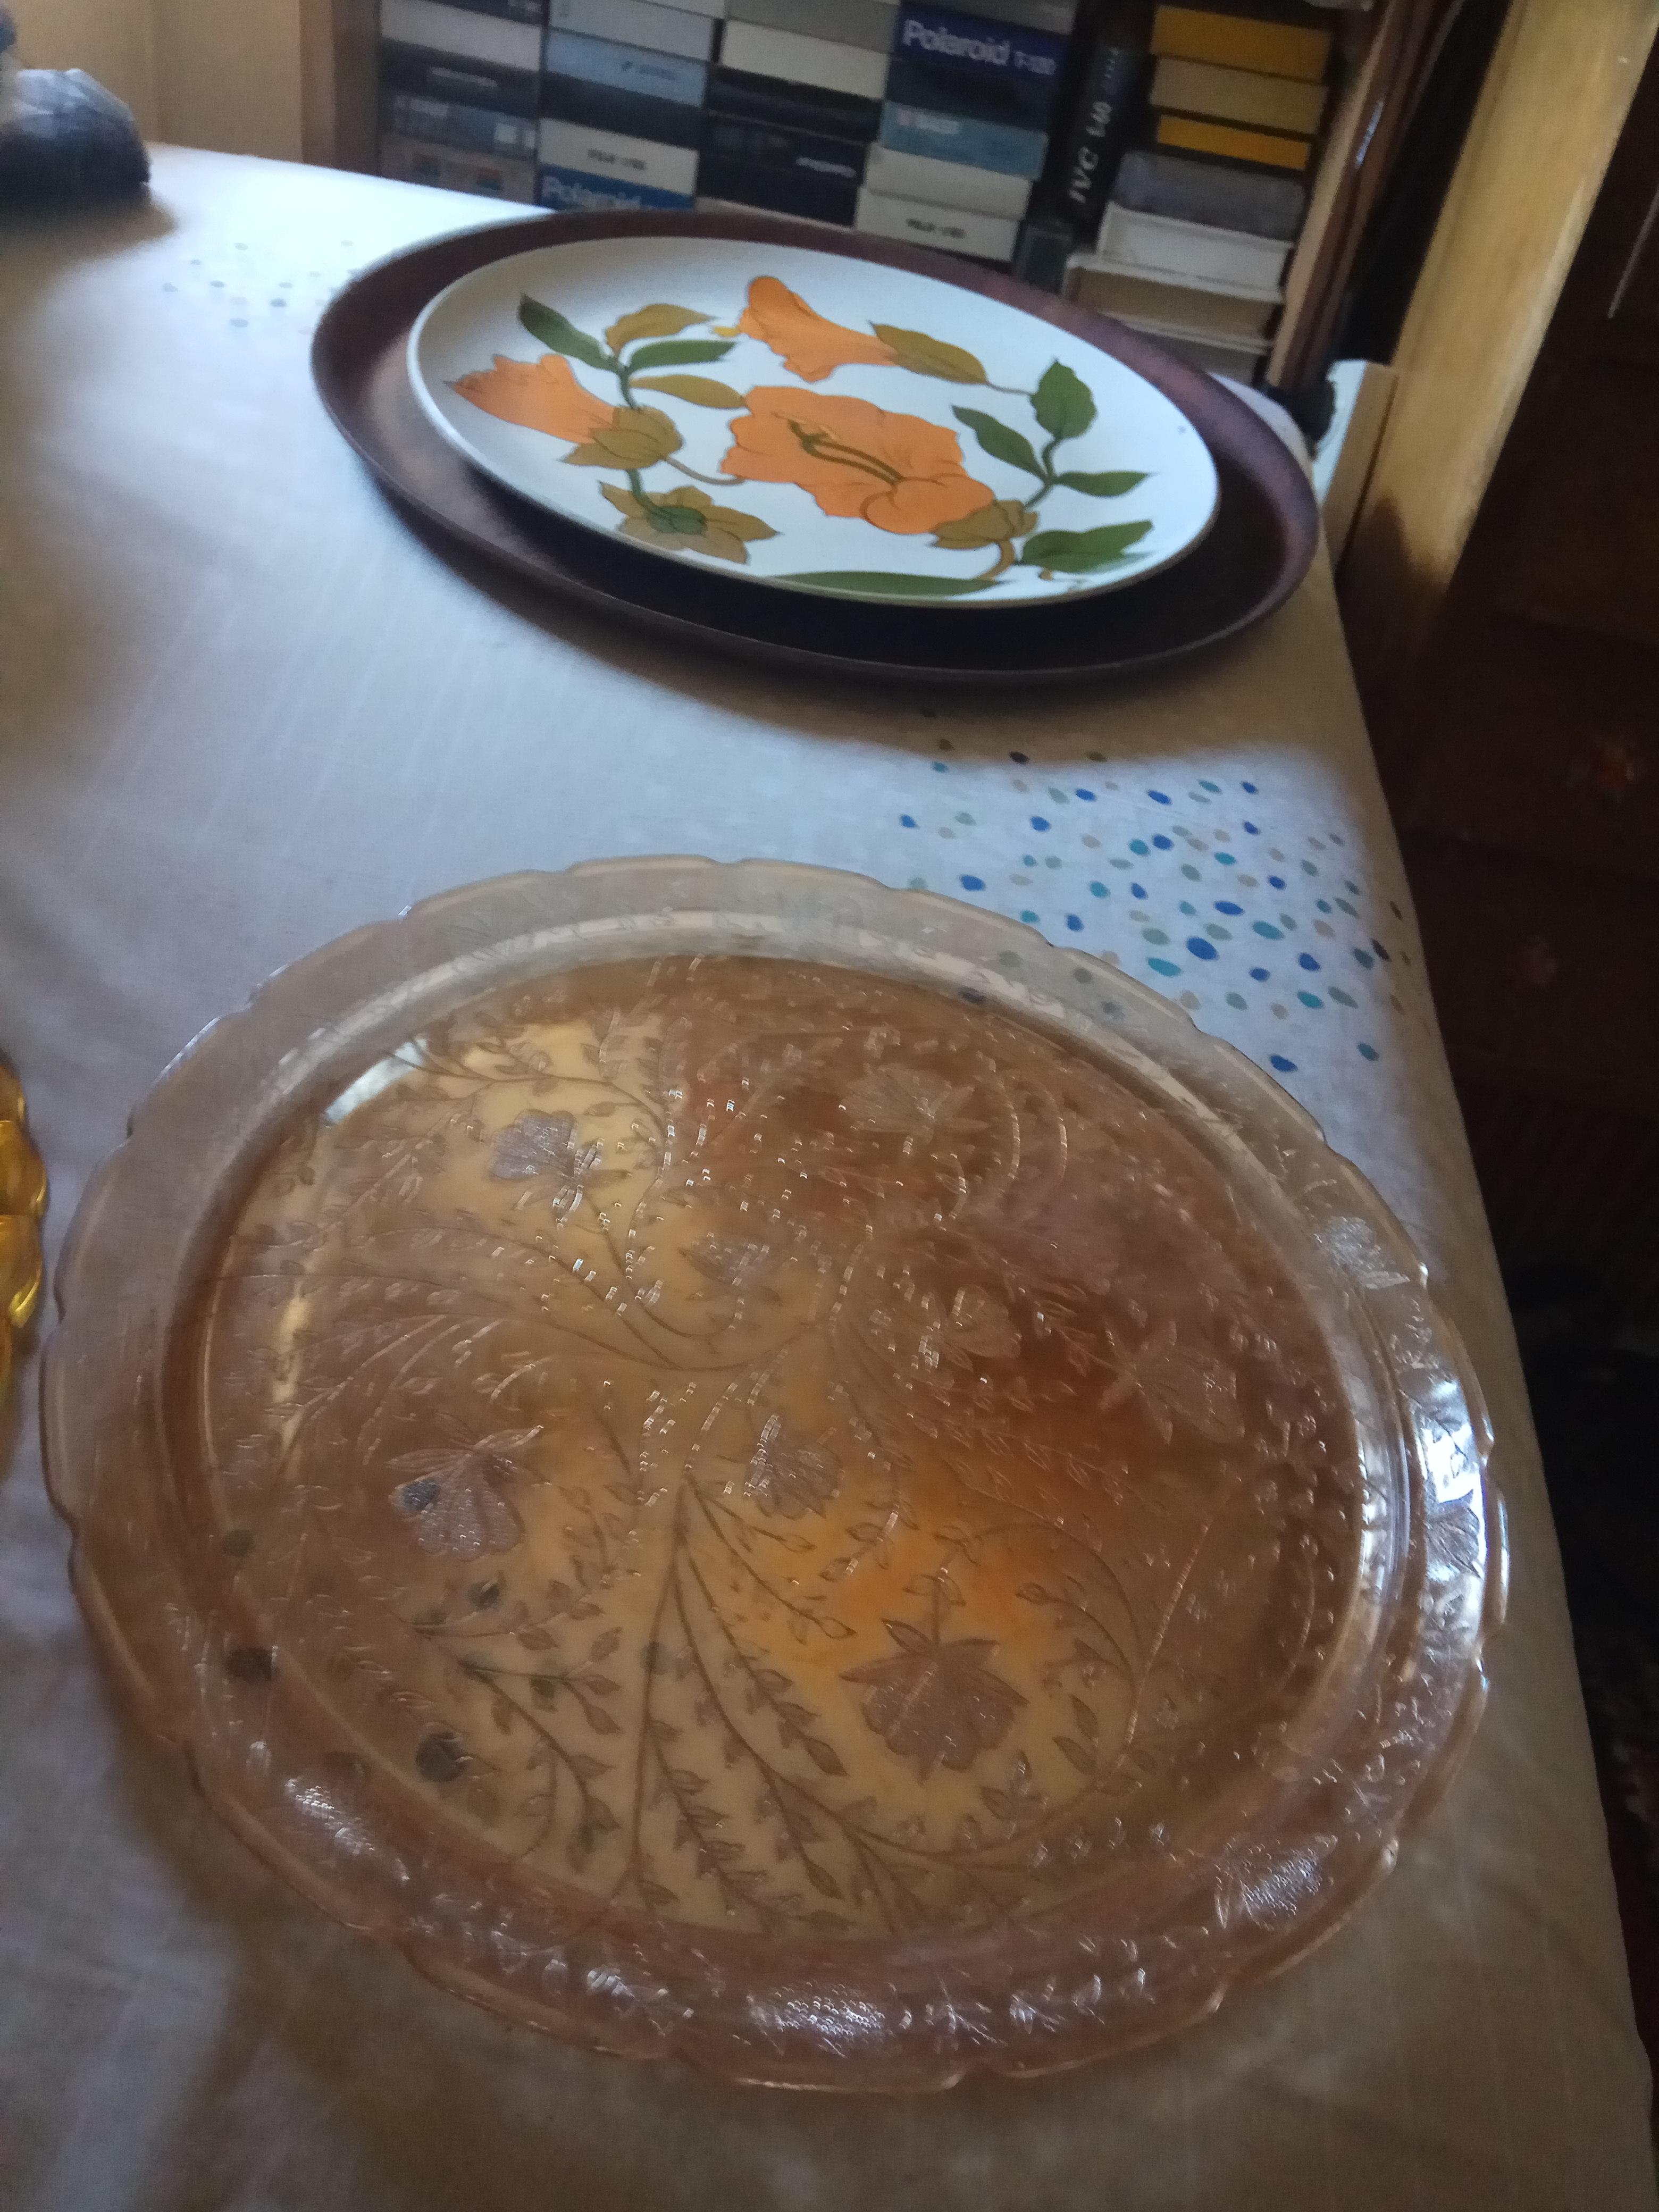 תמונה 5 ,5  צלחות הגשה לעוגות  למכירה בירושלים כלי מטבח  כלי אפיה